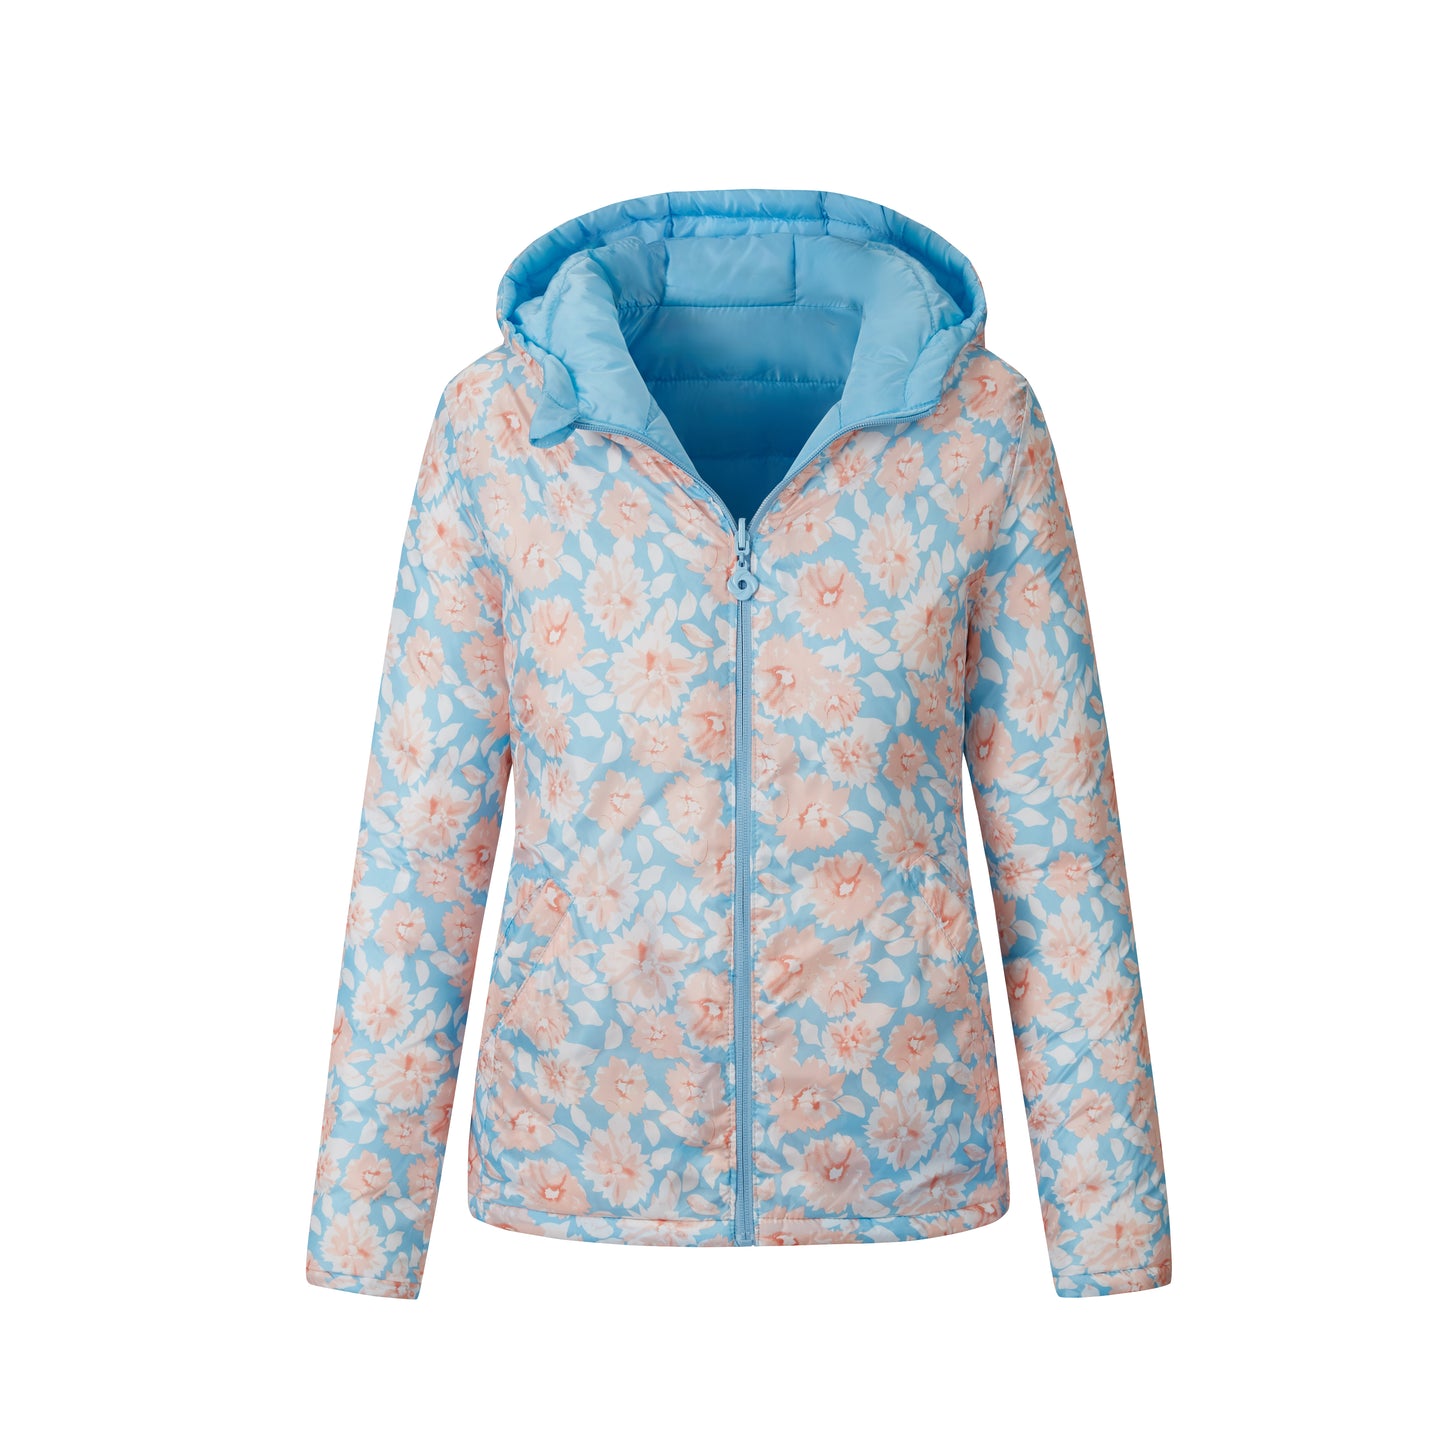 Reversible Ladies Jacket: Winter Fashion Coat with Waterproof Hood